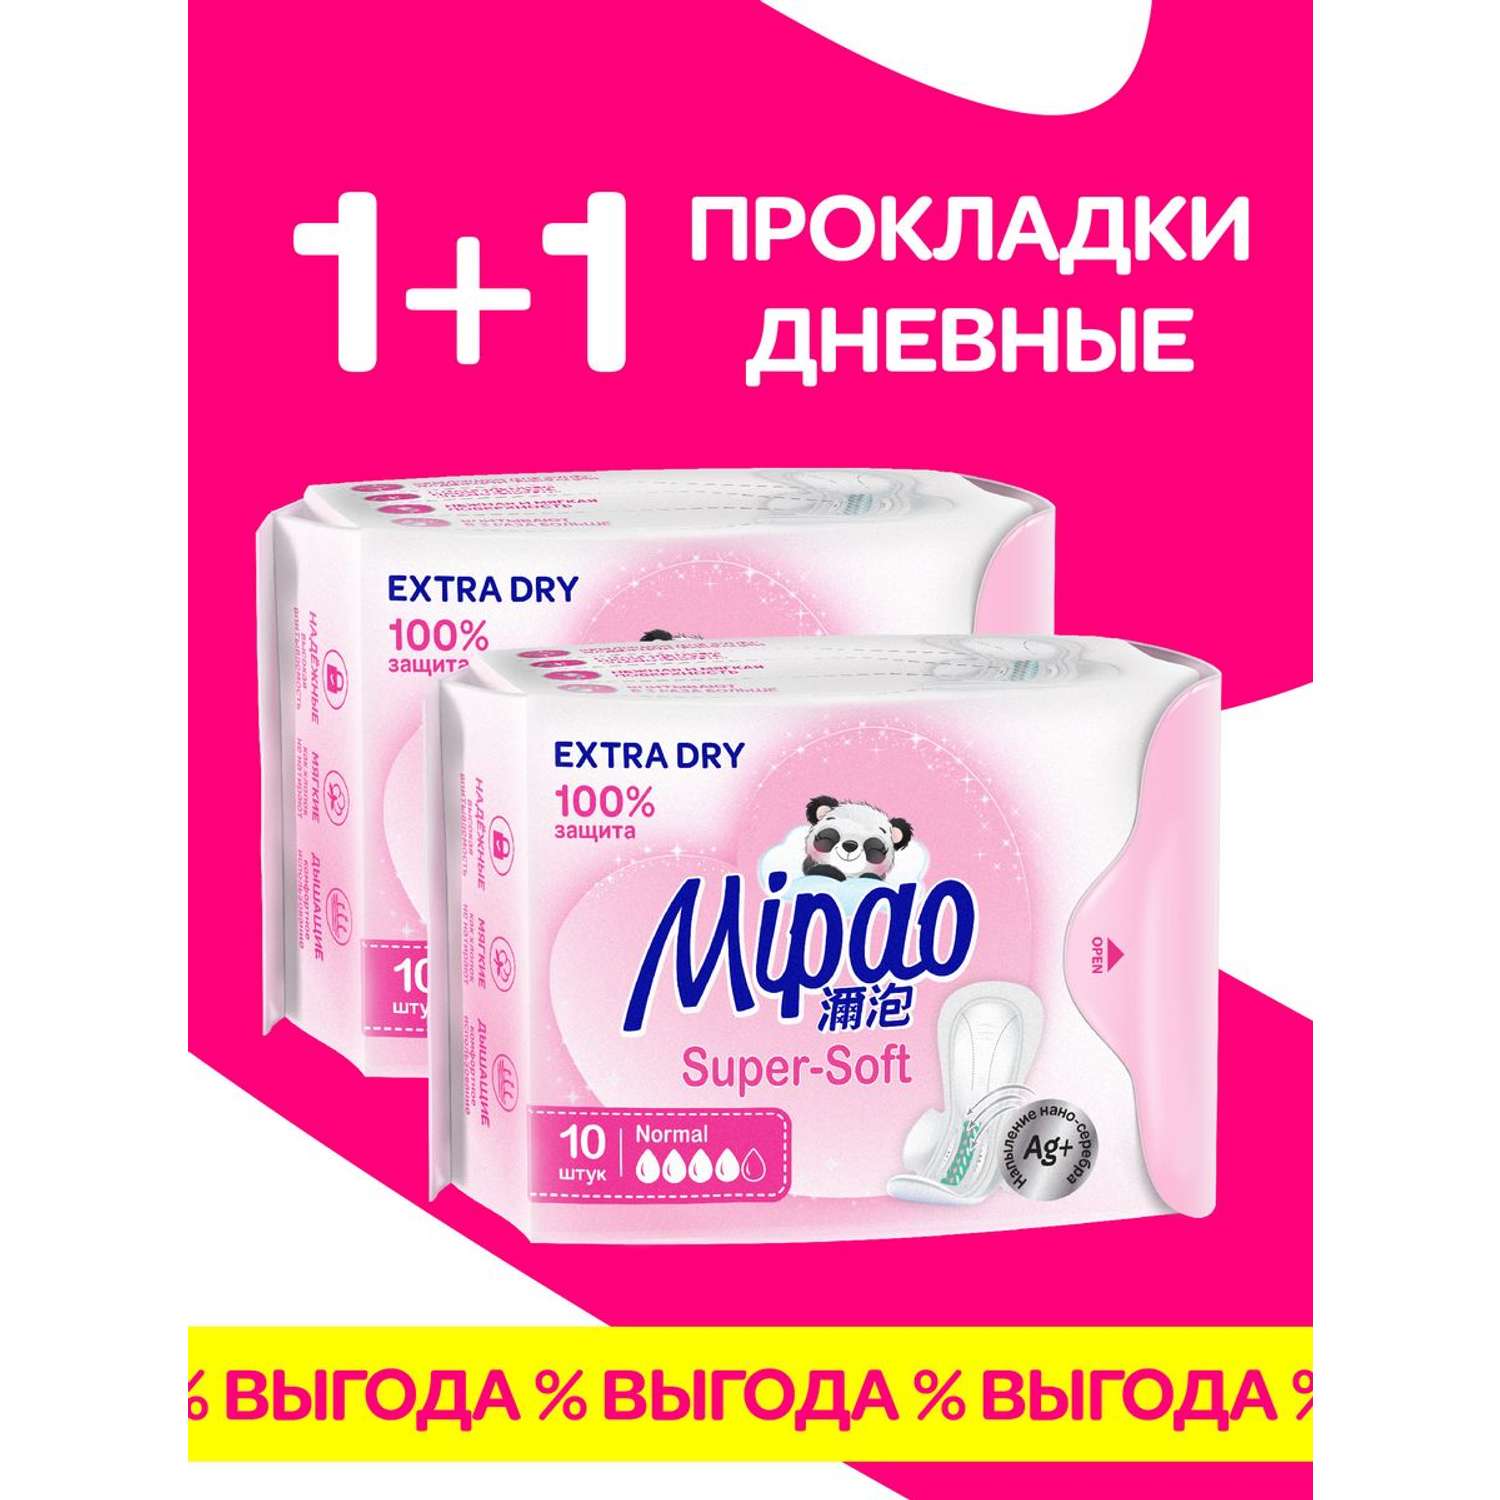 Прокладки дневные Mipao Прокладки женские гигиенические дневные 20 штук Mipao / Мипао - фото 2